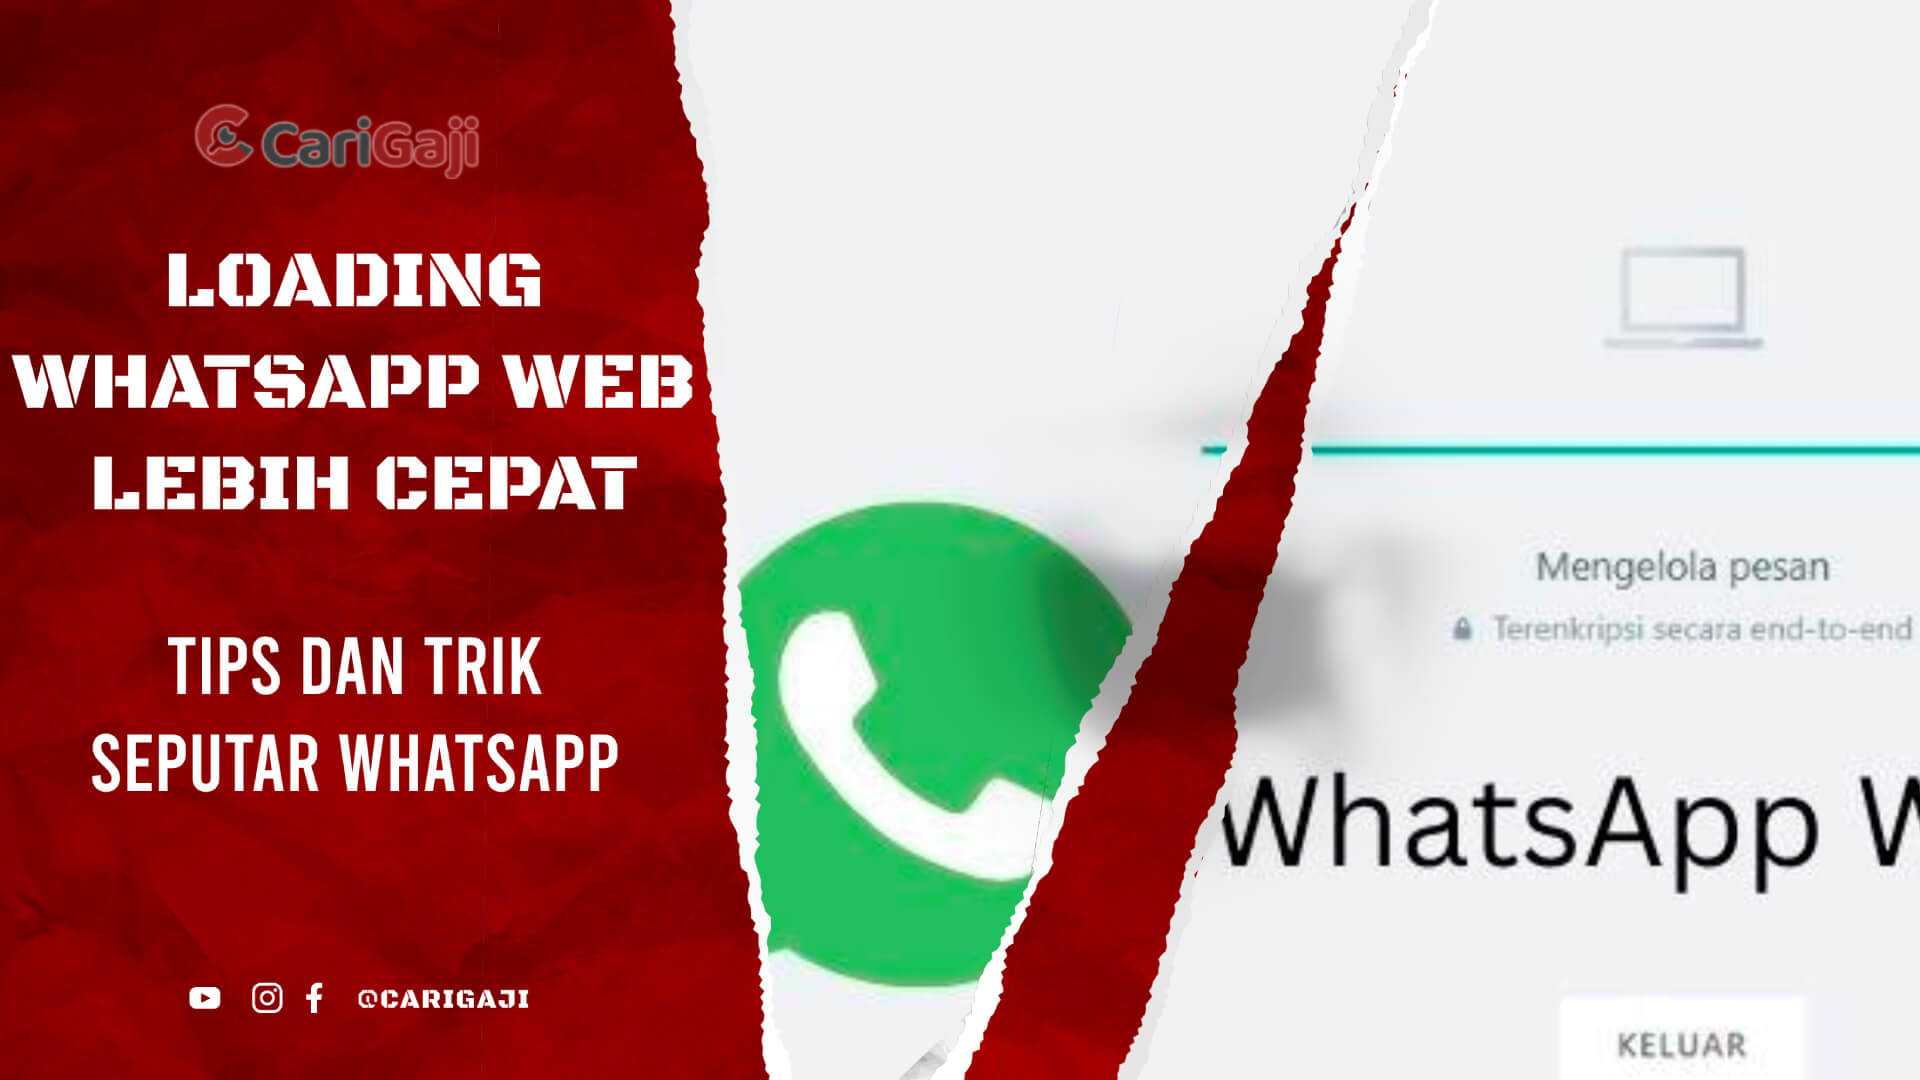 Cara agar Loading WhatsApp Web Lebih Cepat